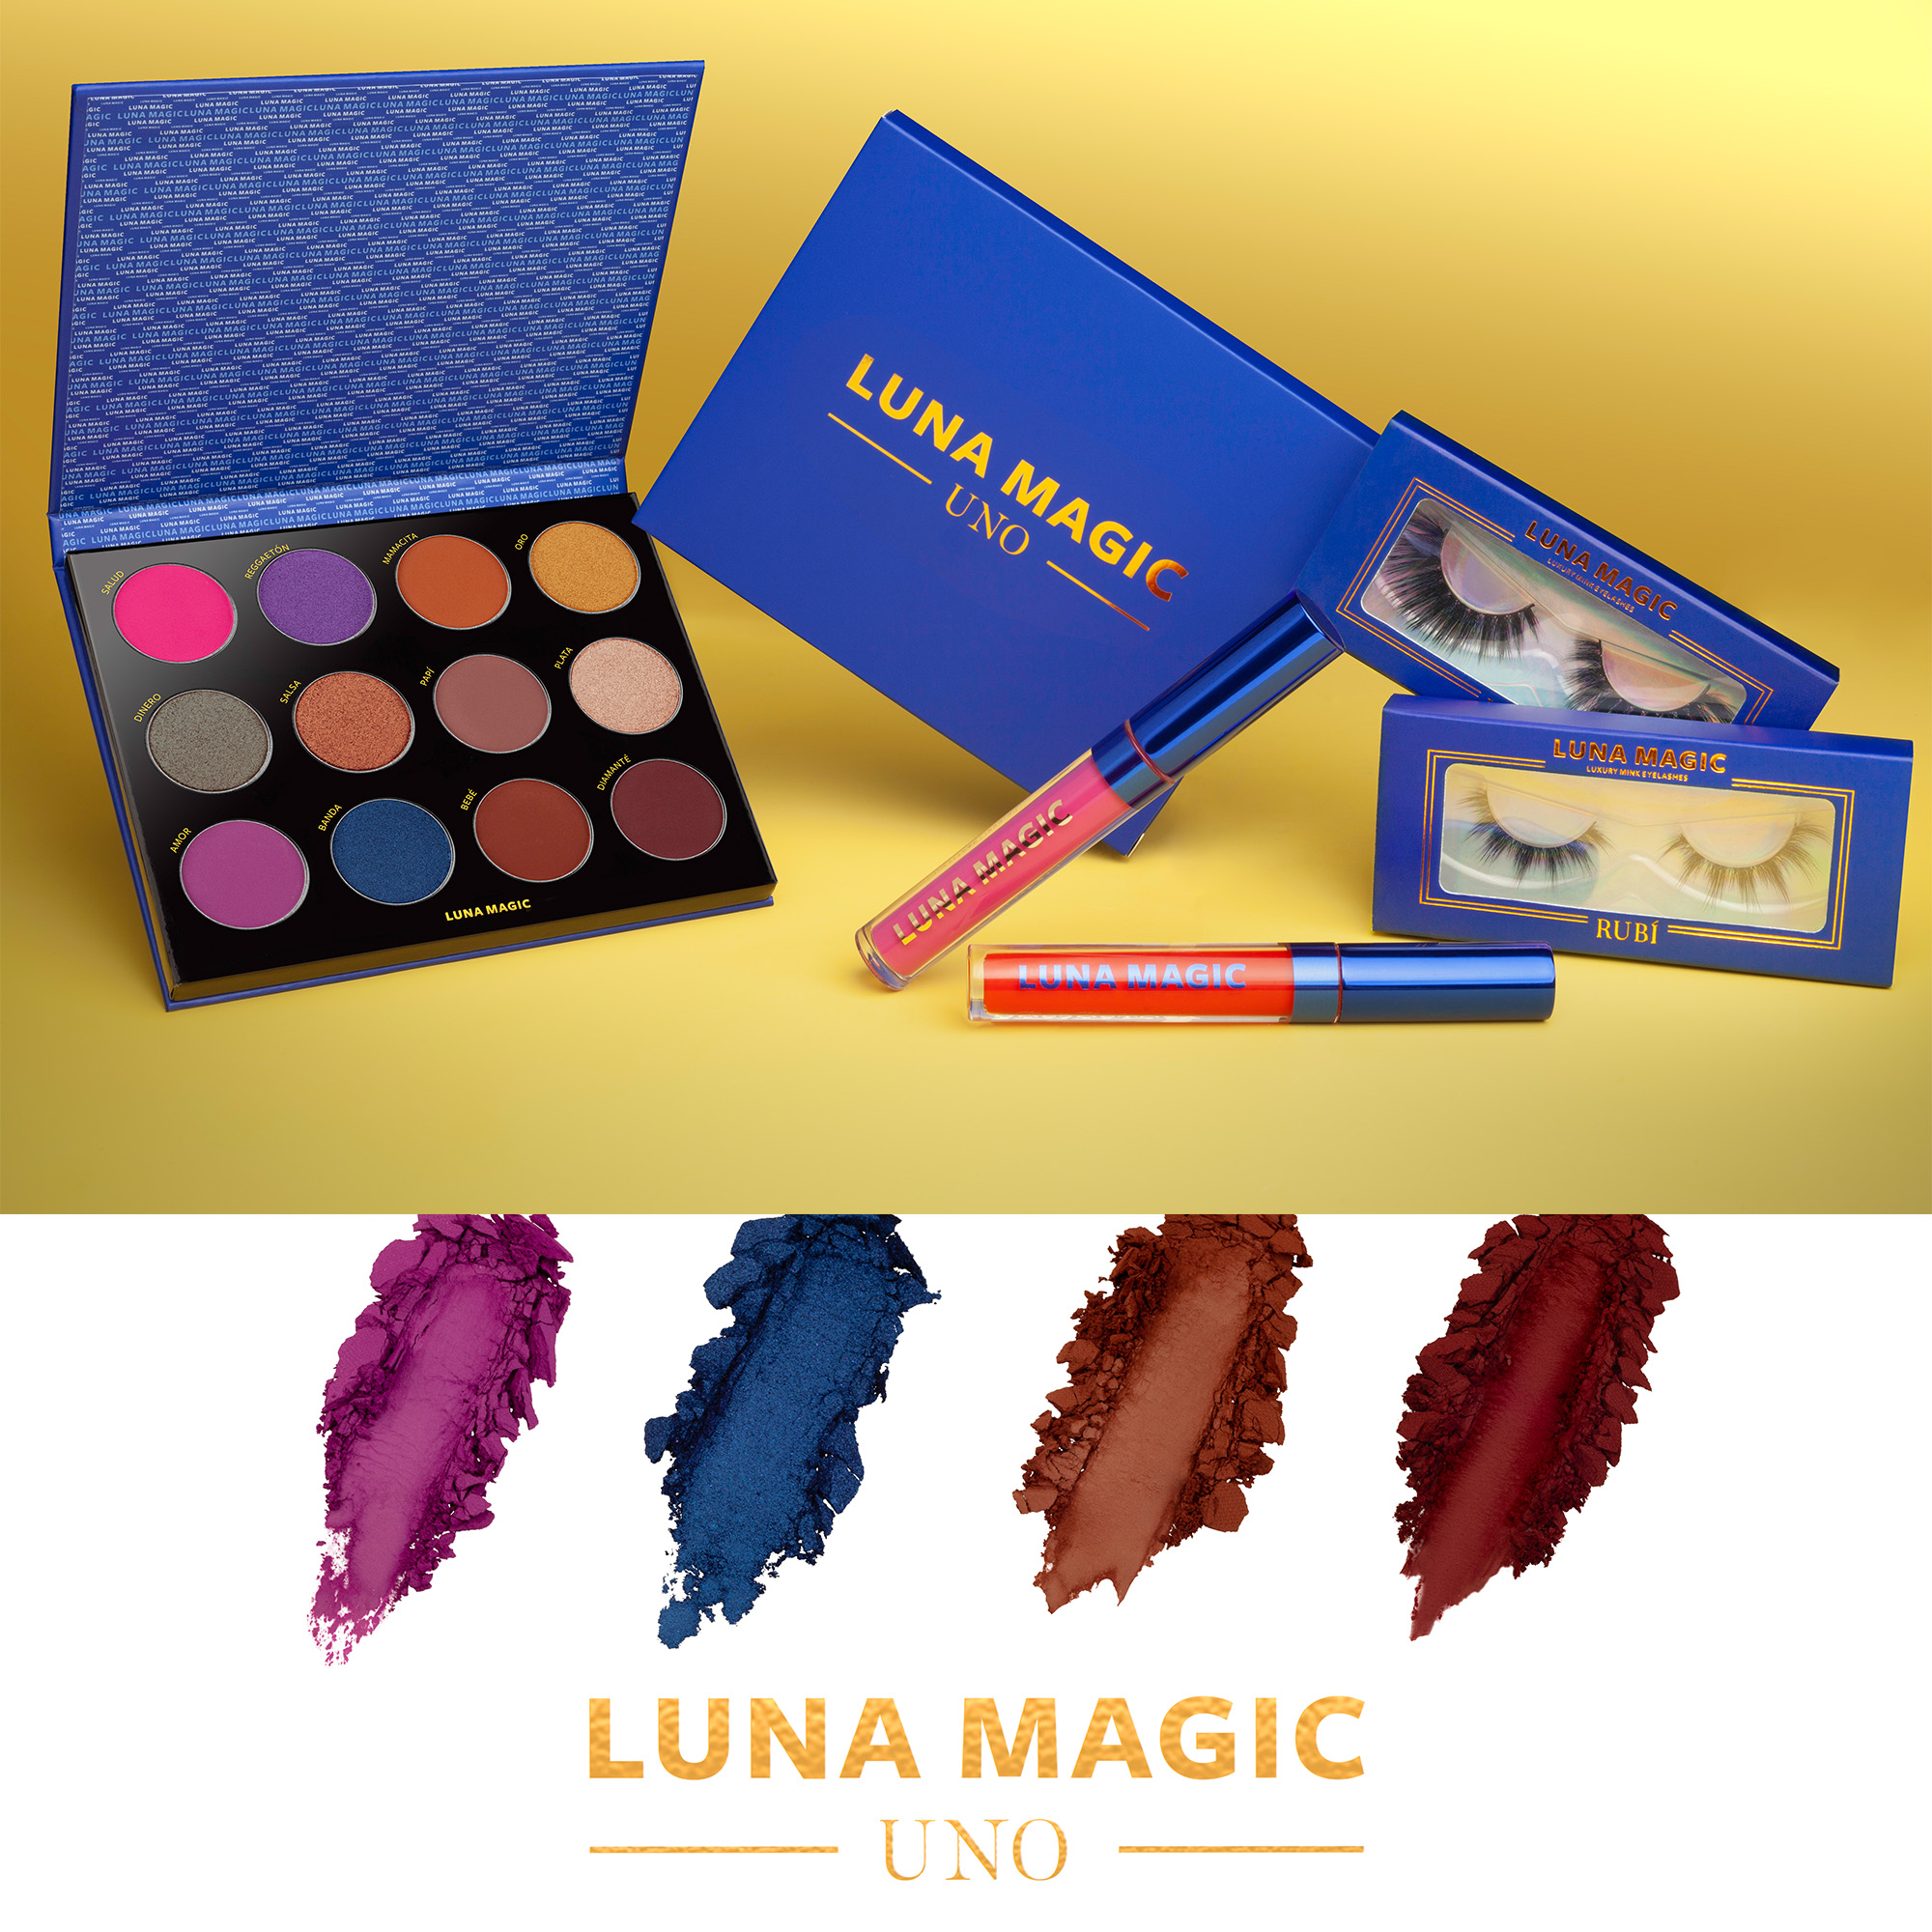 Luna Magic Shadow Makeup Palette, 12 Colors - image 5 of 6